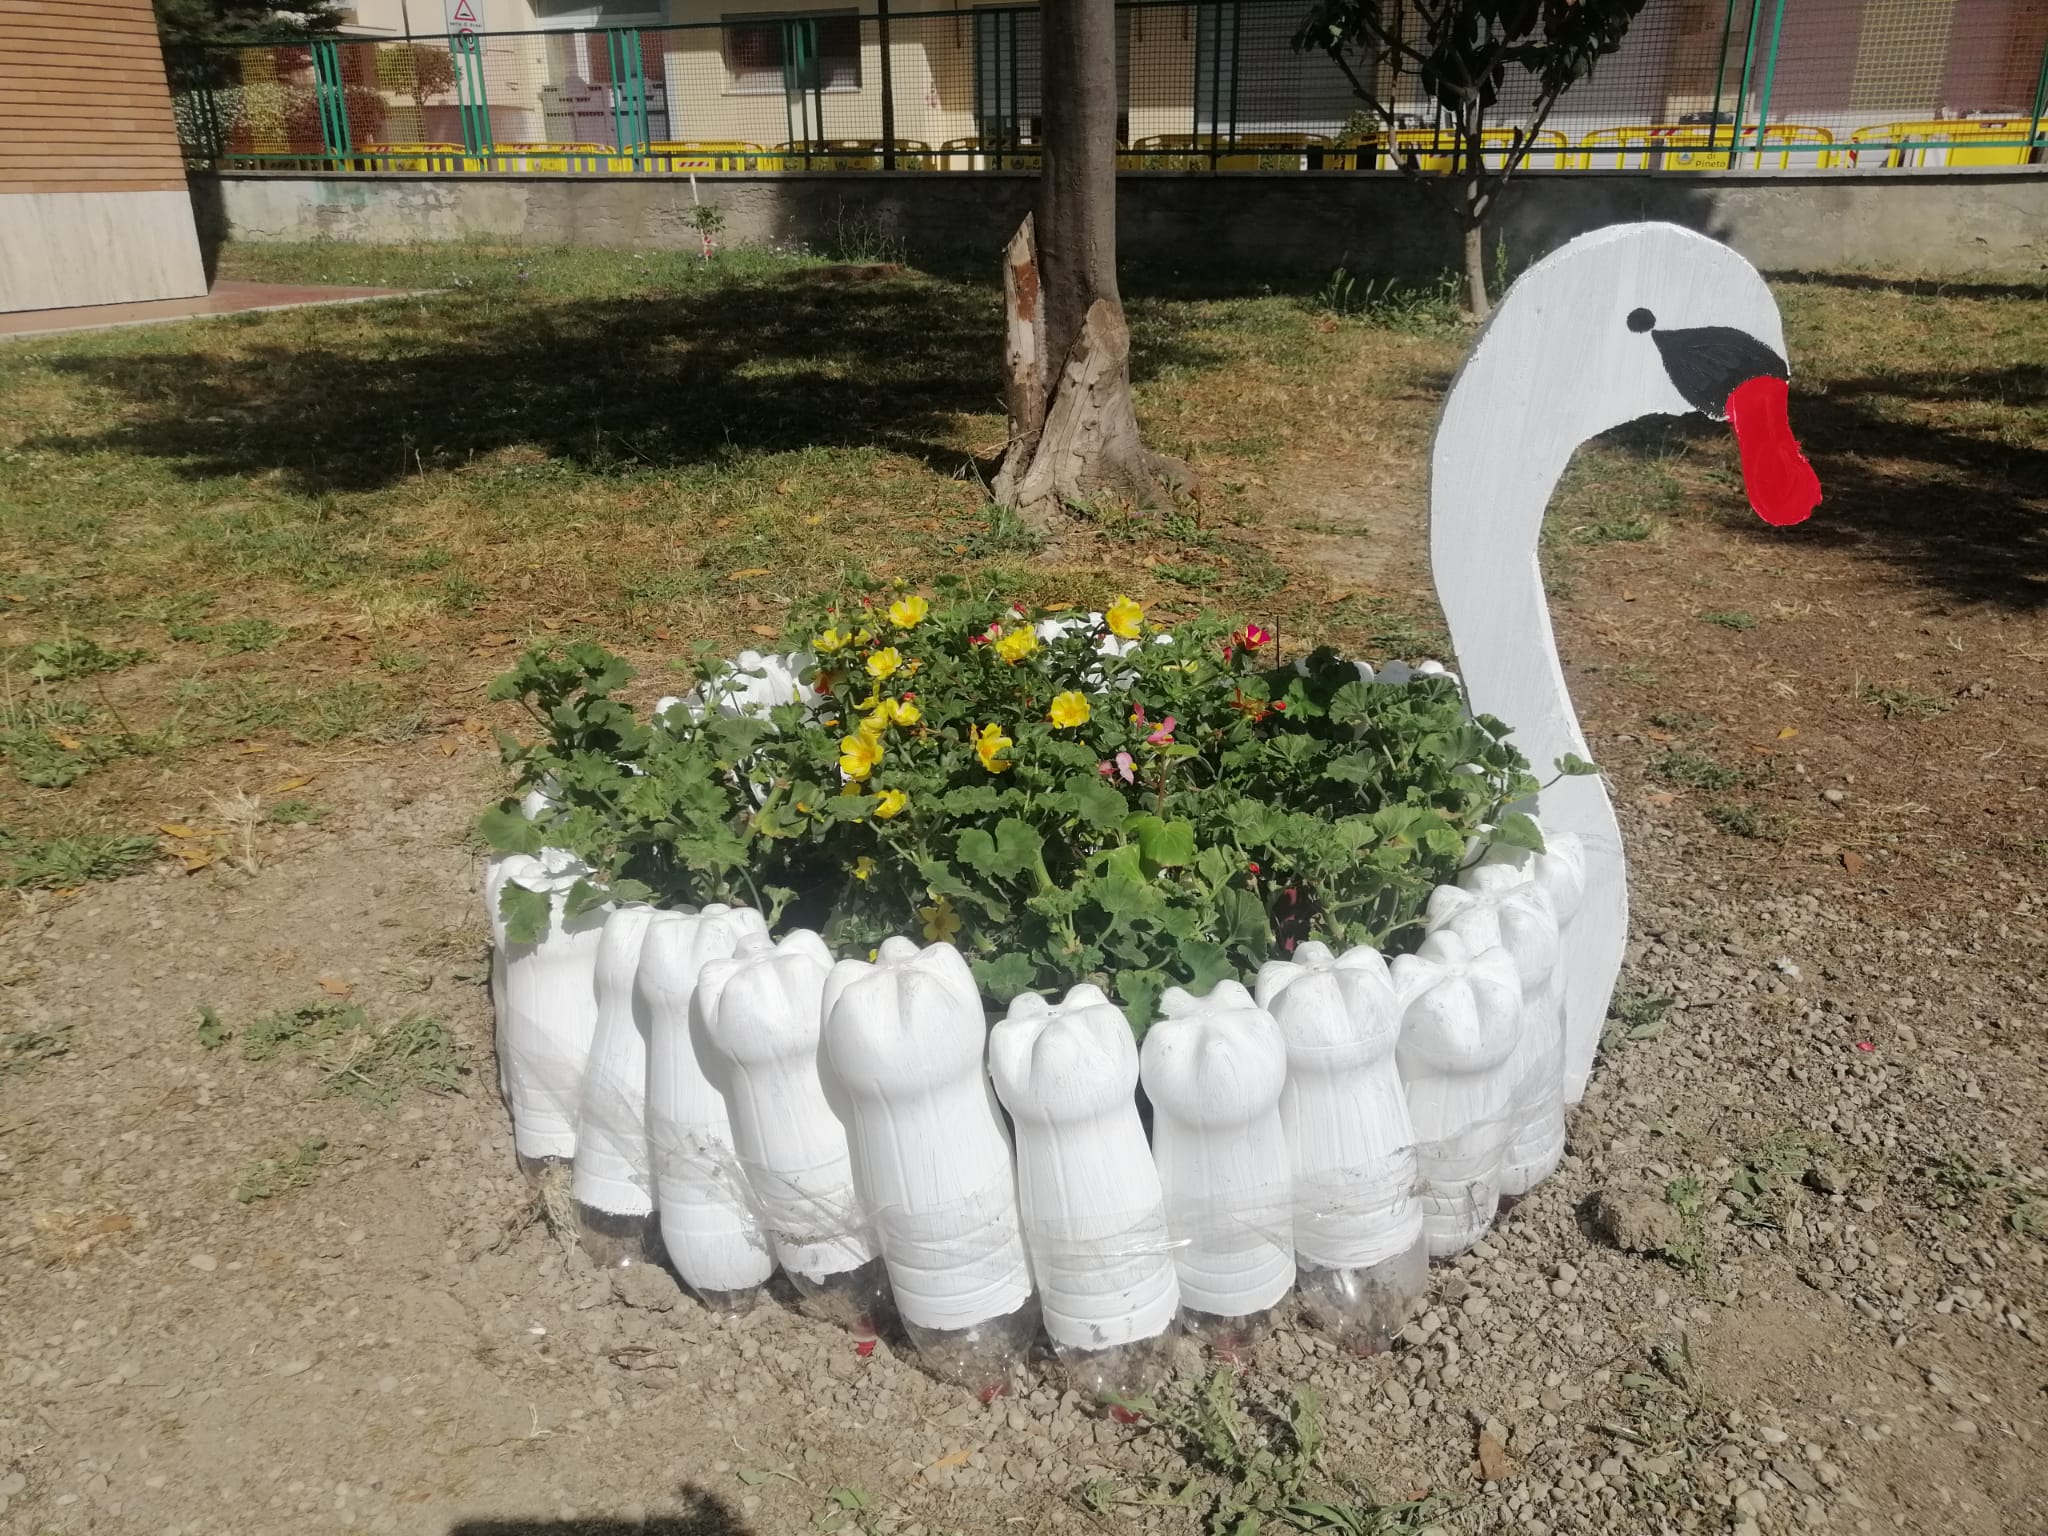 Pineto: fioriere fatte di gomma e bottiglie nel giardino della scuola elementare FOTO